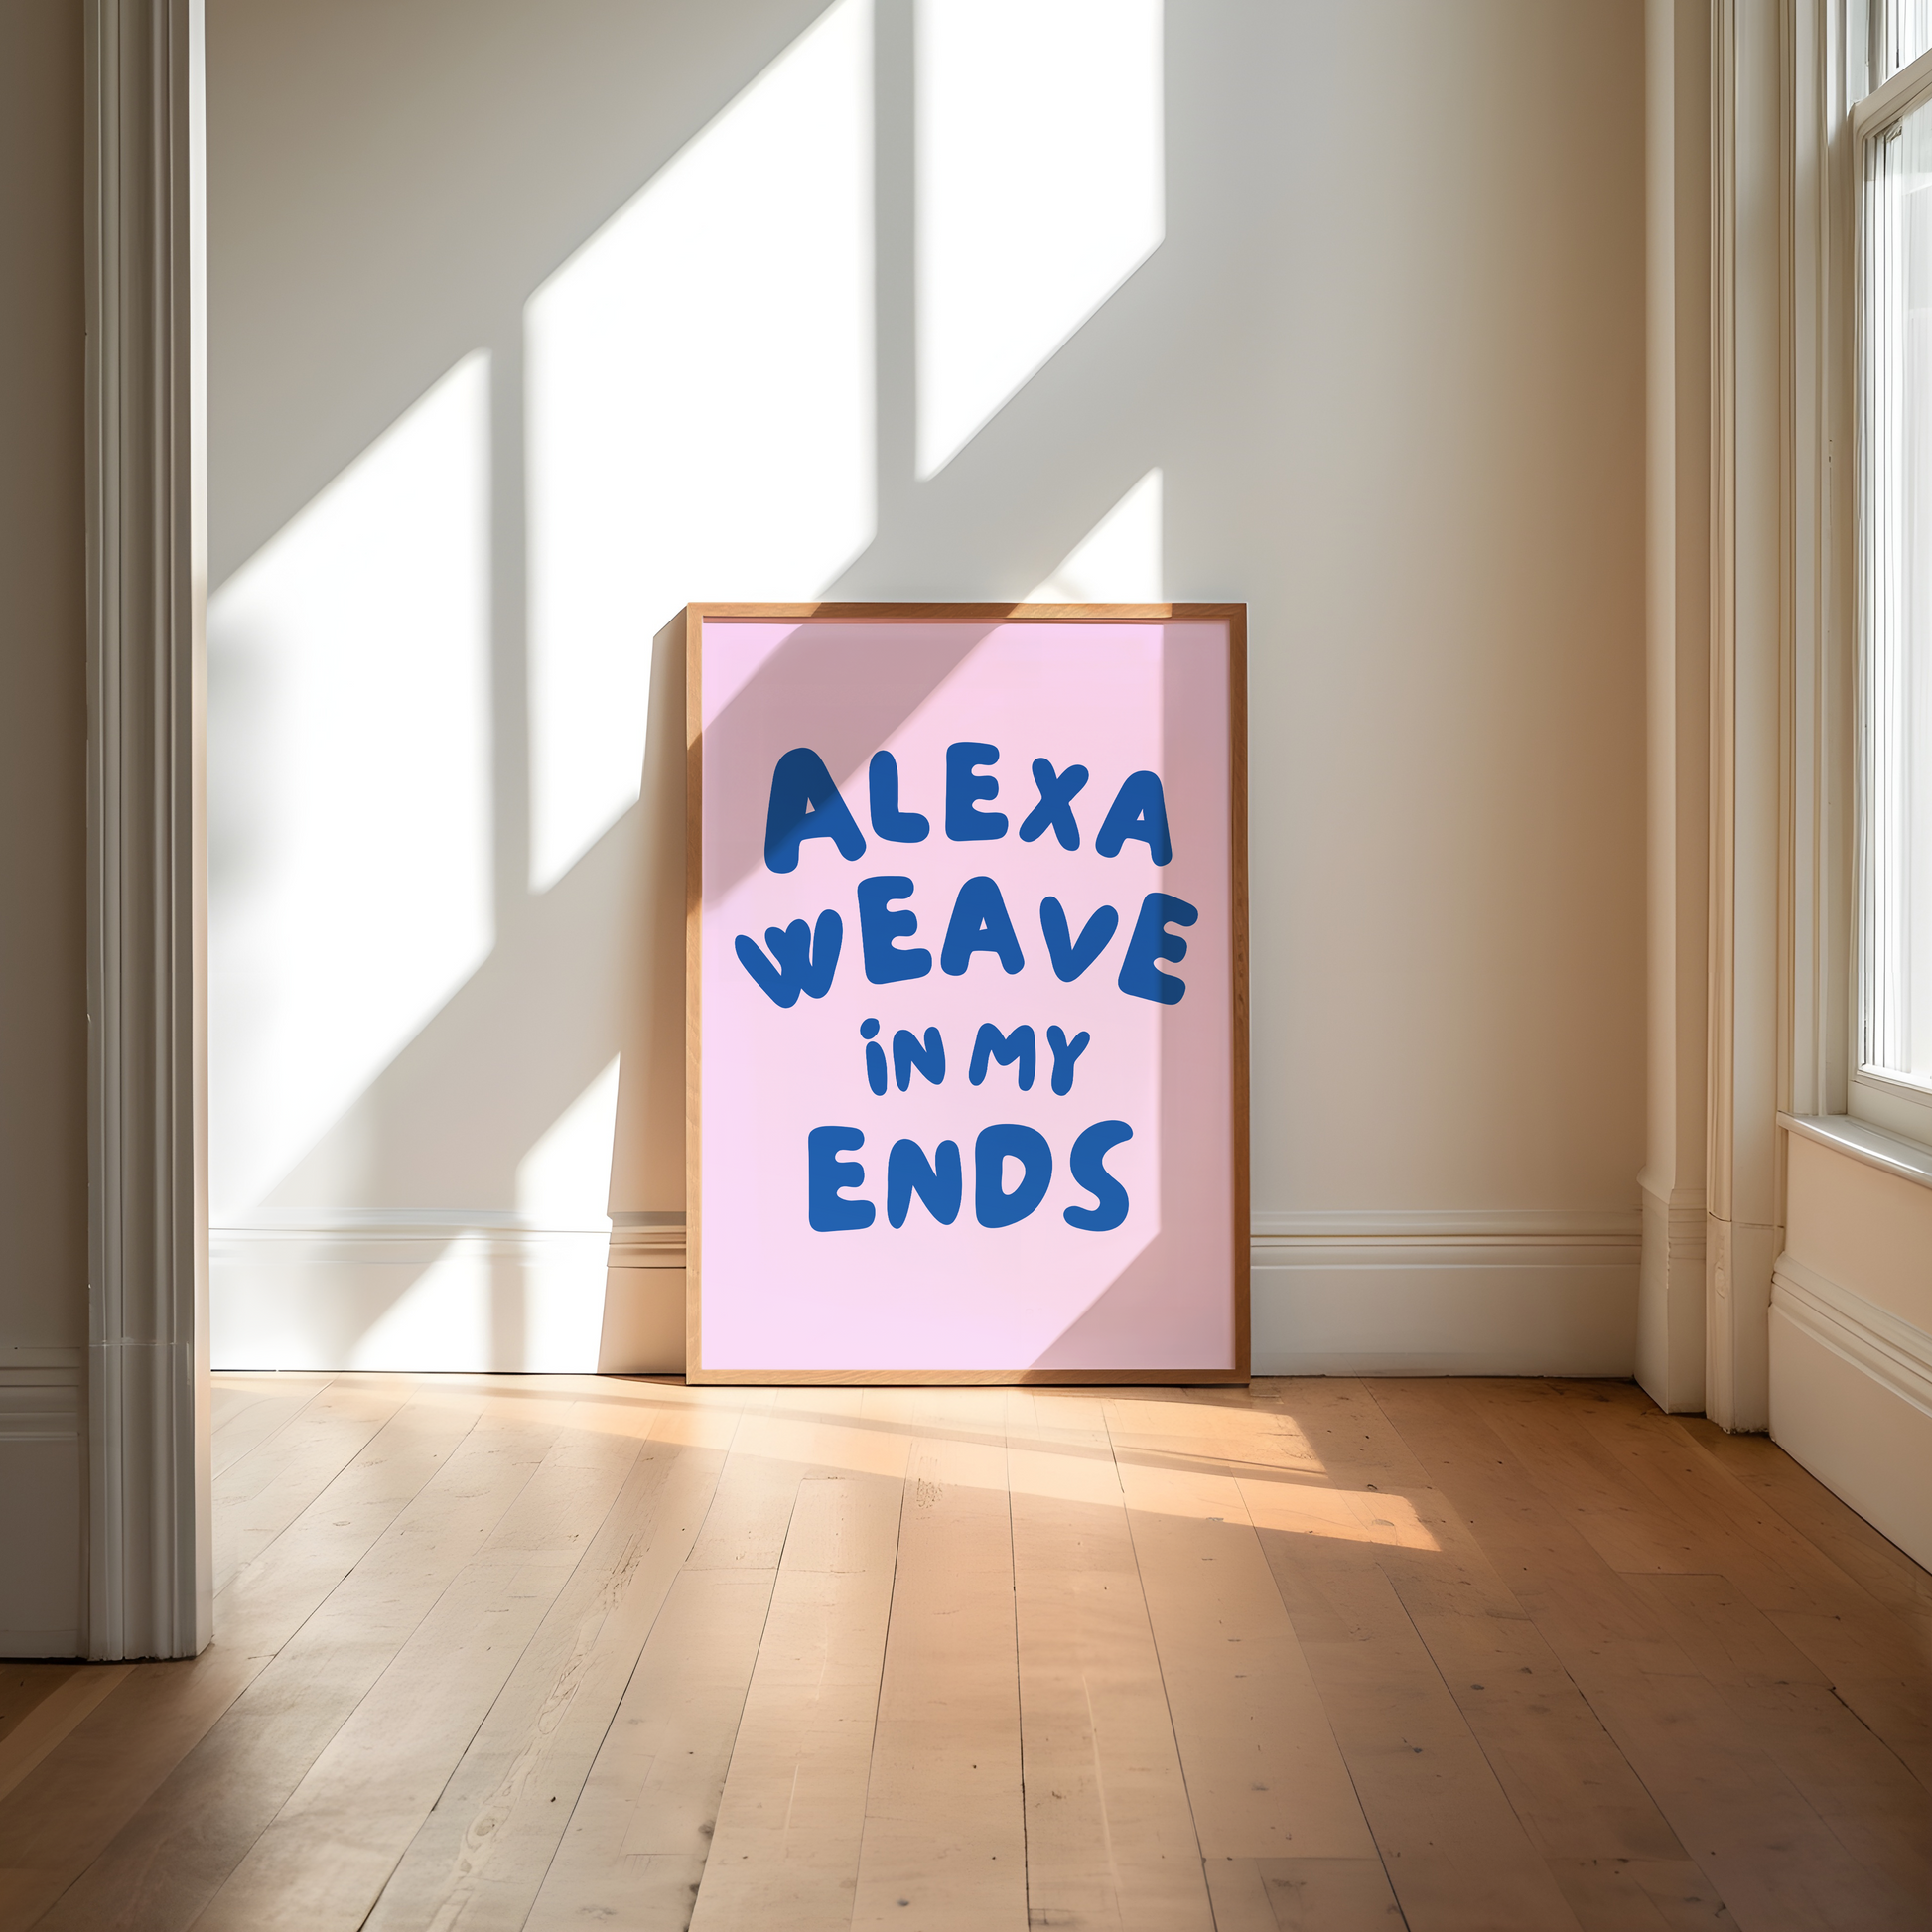 Alexa weave in my ends digital art print pink blue